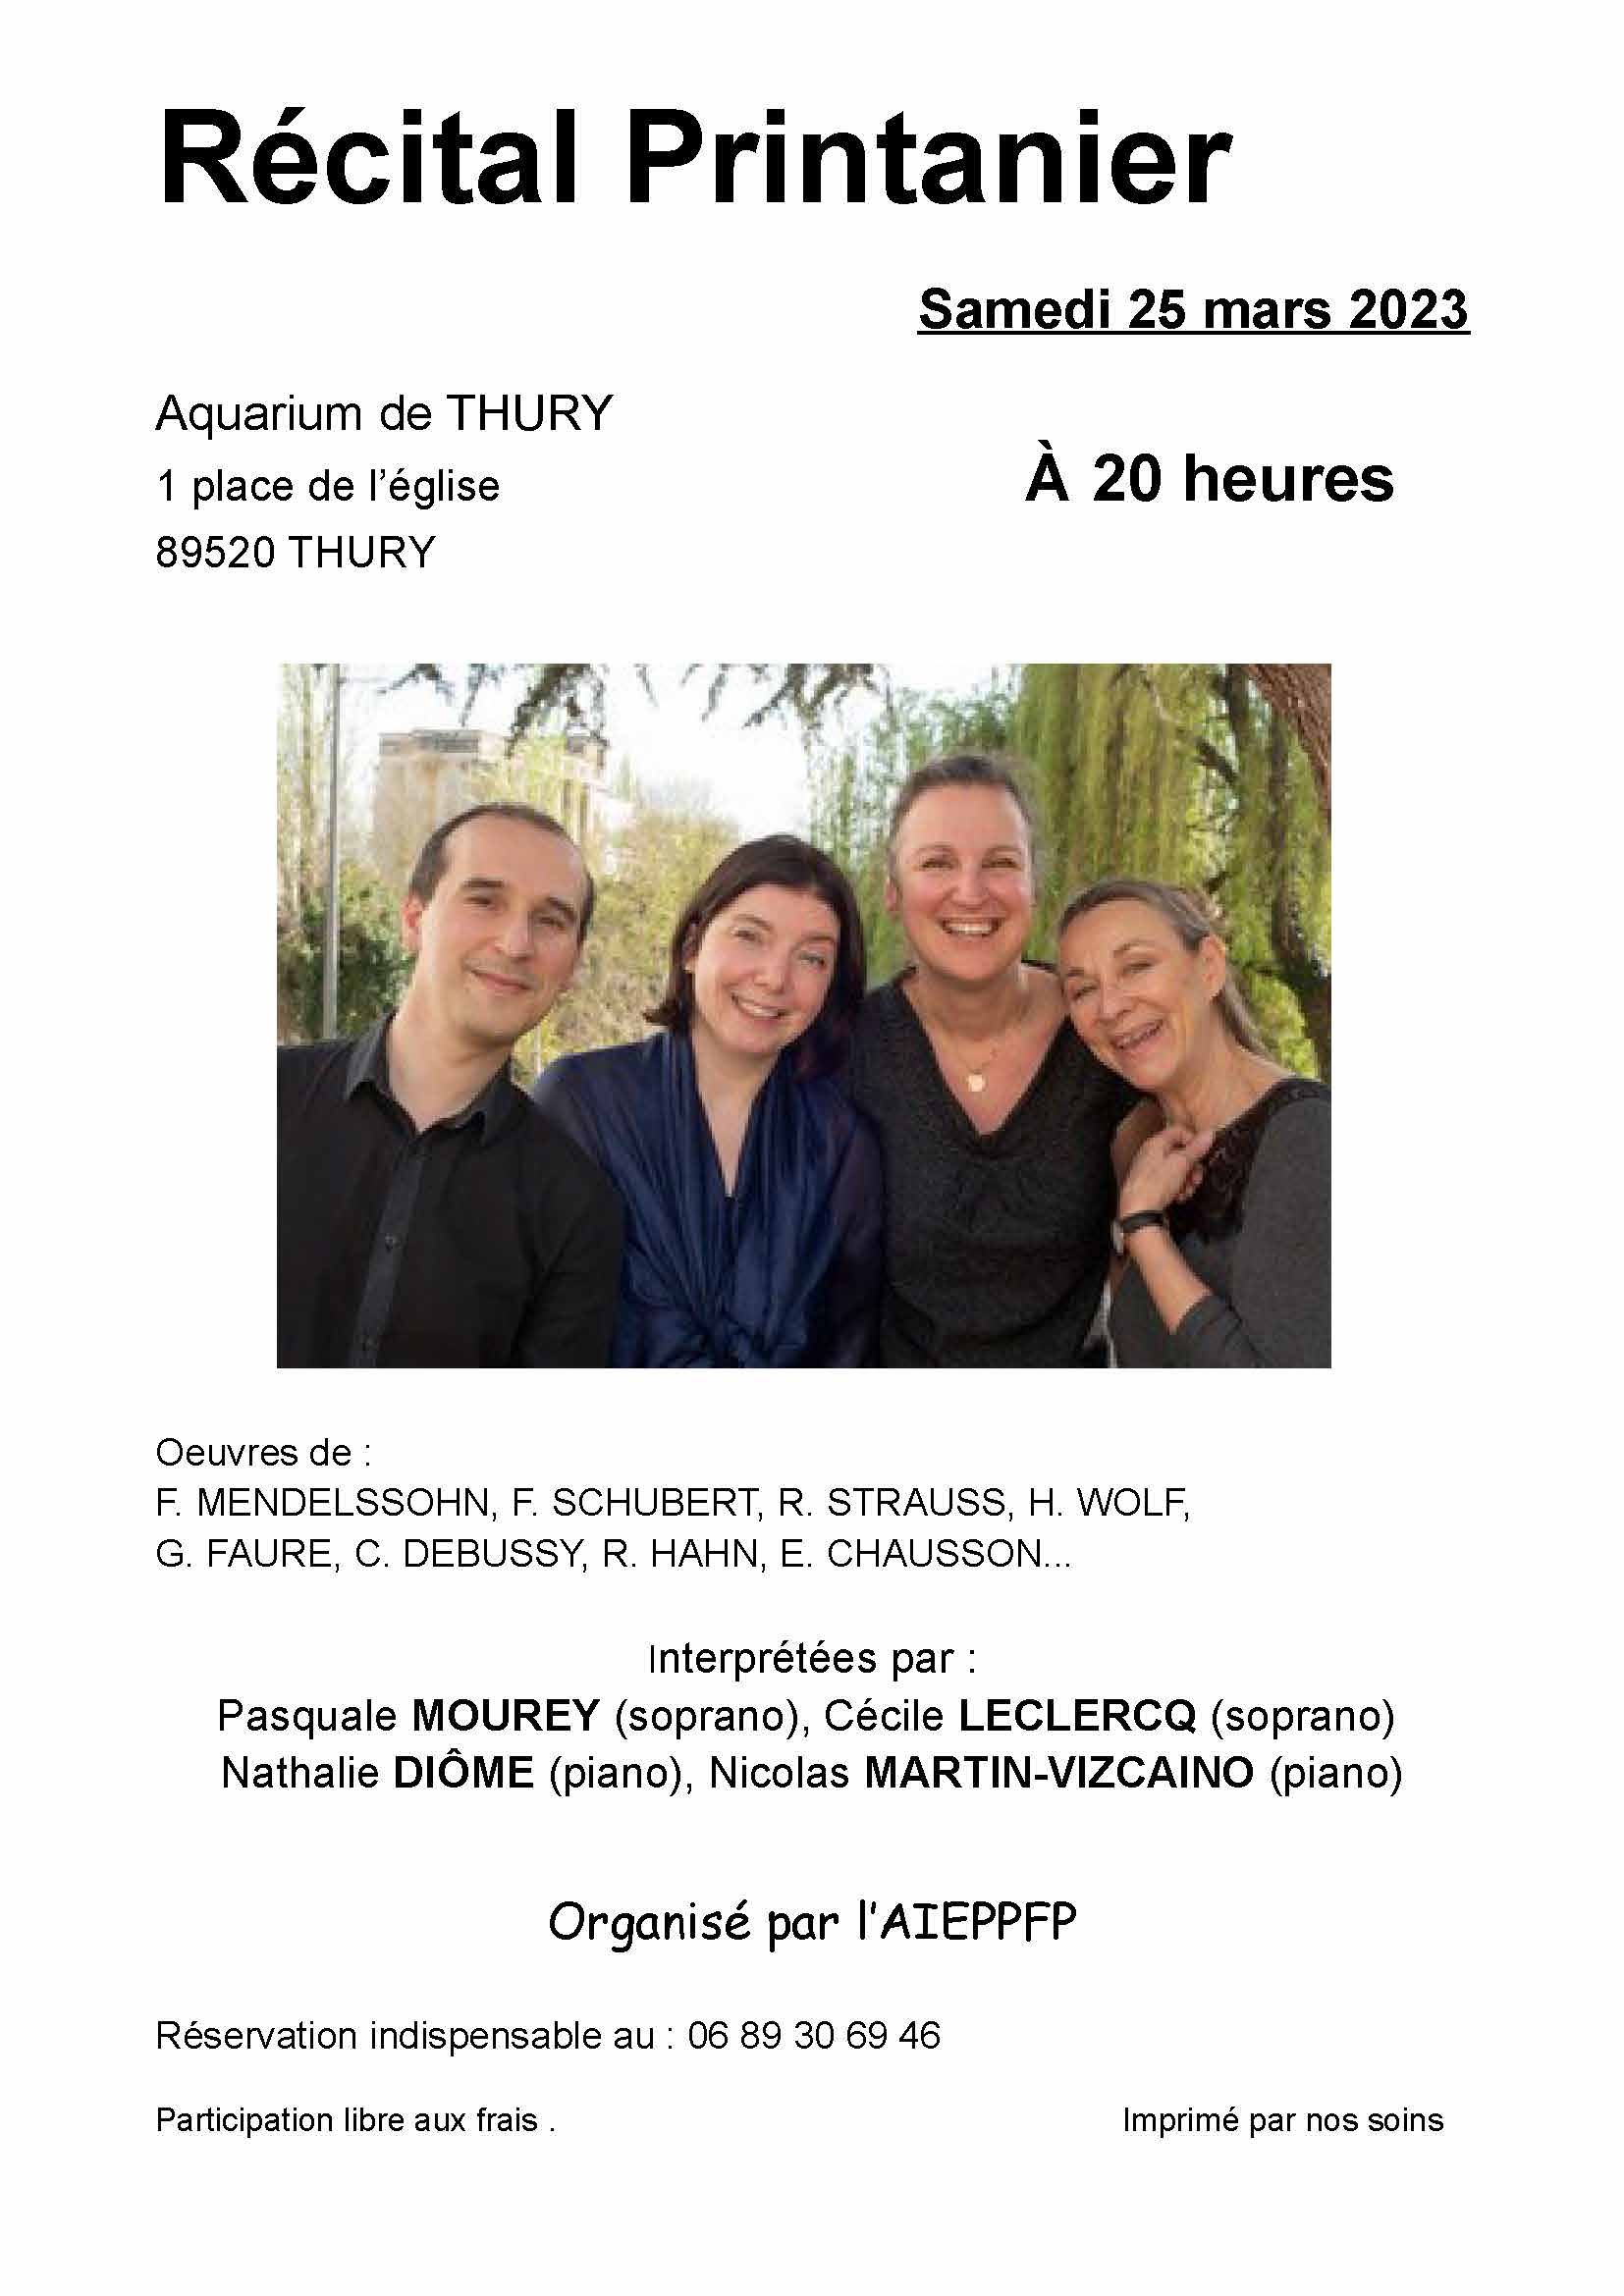 Récital Printanier du 25 mars 2023 @ Salon de l'aquarium | Thury | Bourgogne-Franche-Comté | France